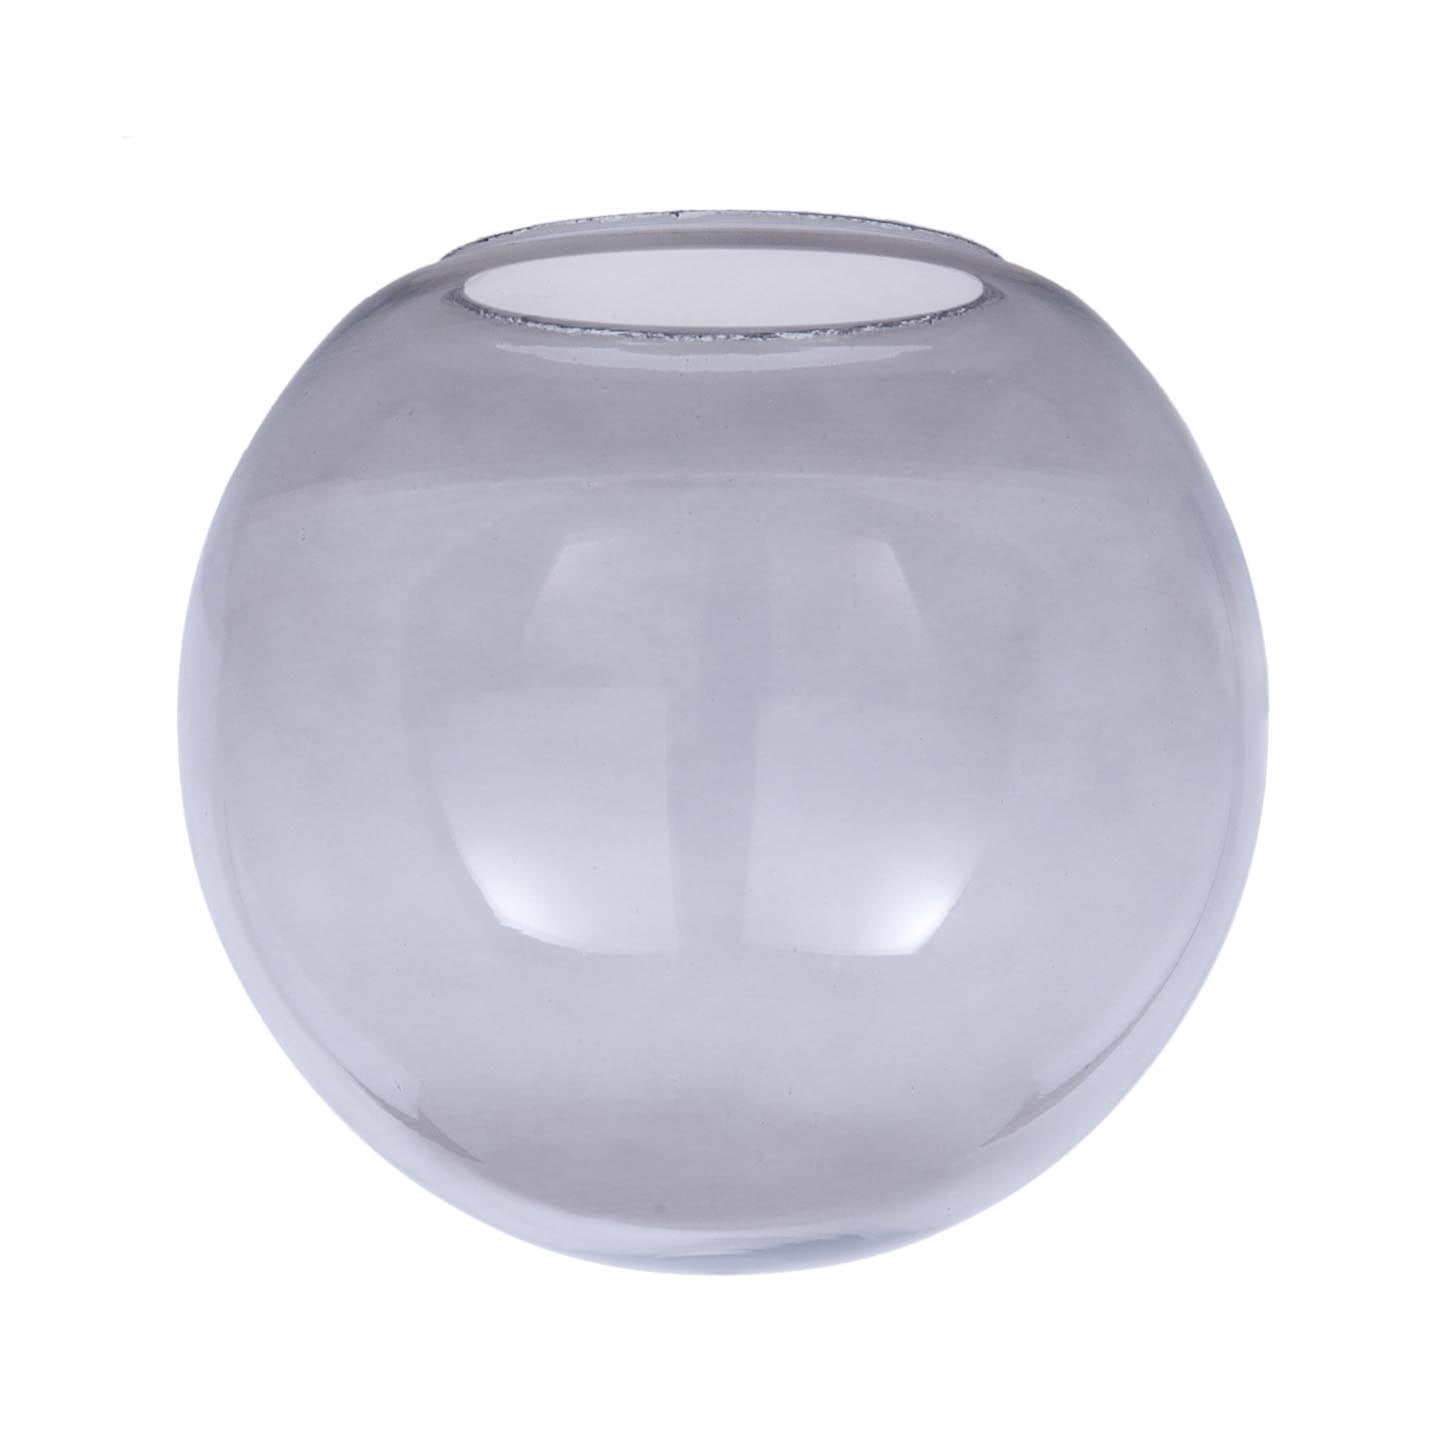 B&P Lamp® 10 Diameter, Smoked Glass Neckless Ball Shade, 4 Fitter